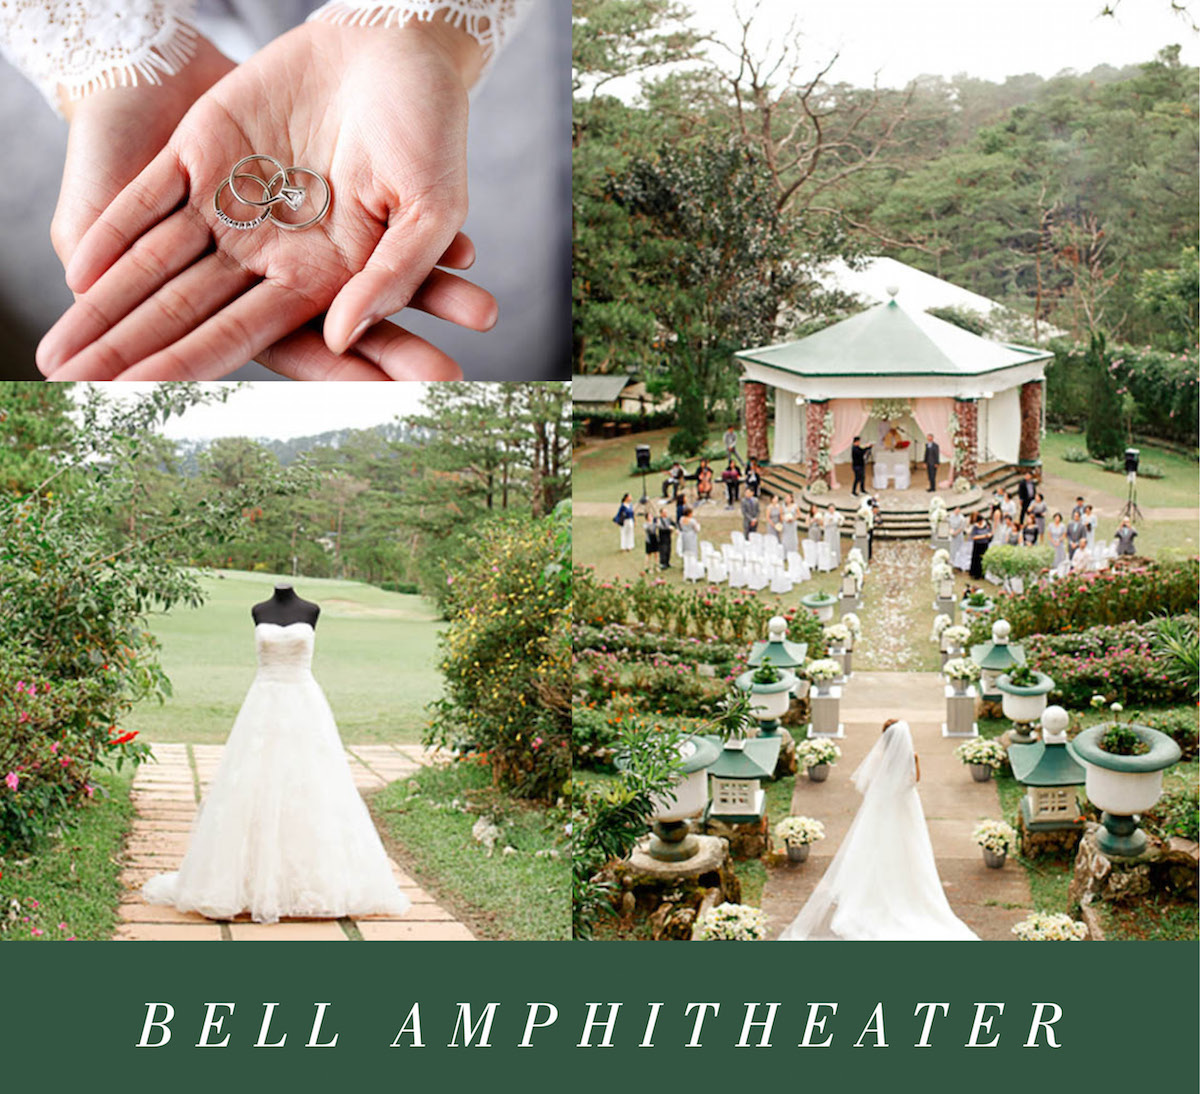 Bell Amphitheater